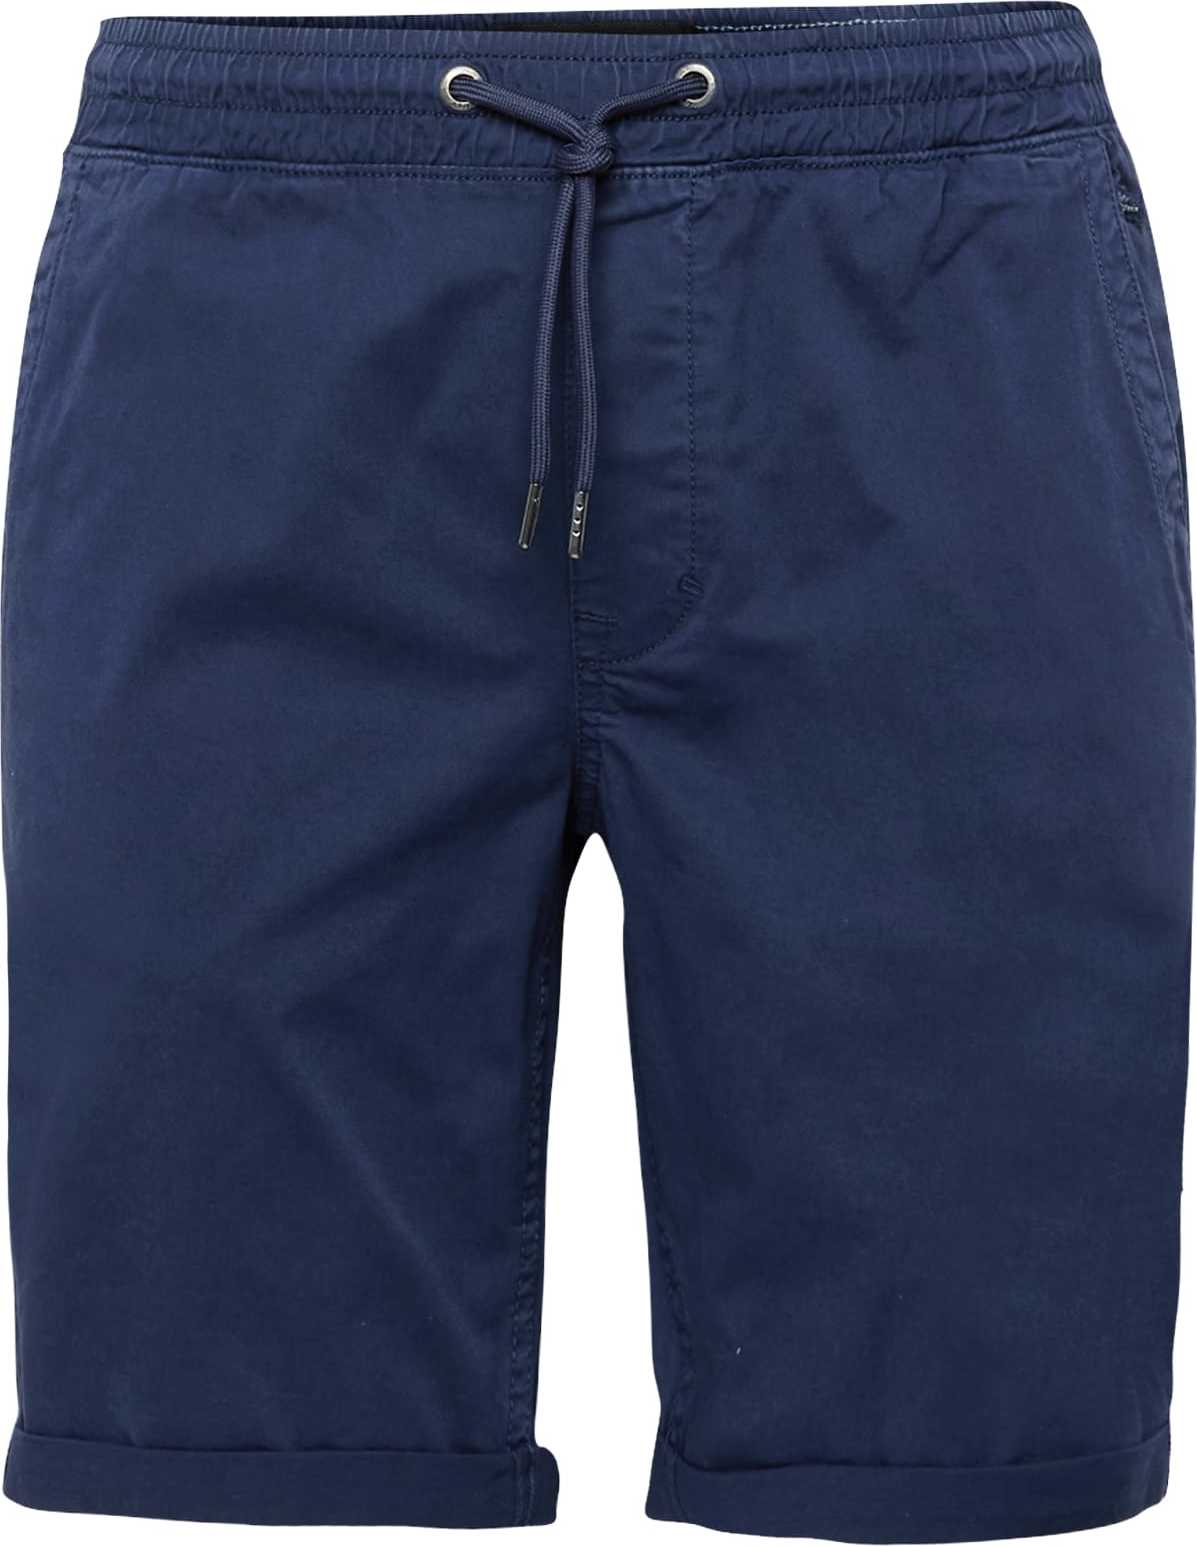 BLEND Chino kalhoty modrá